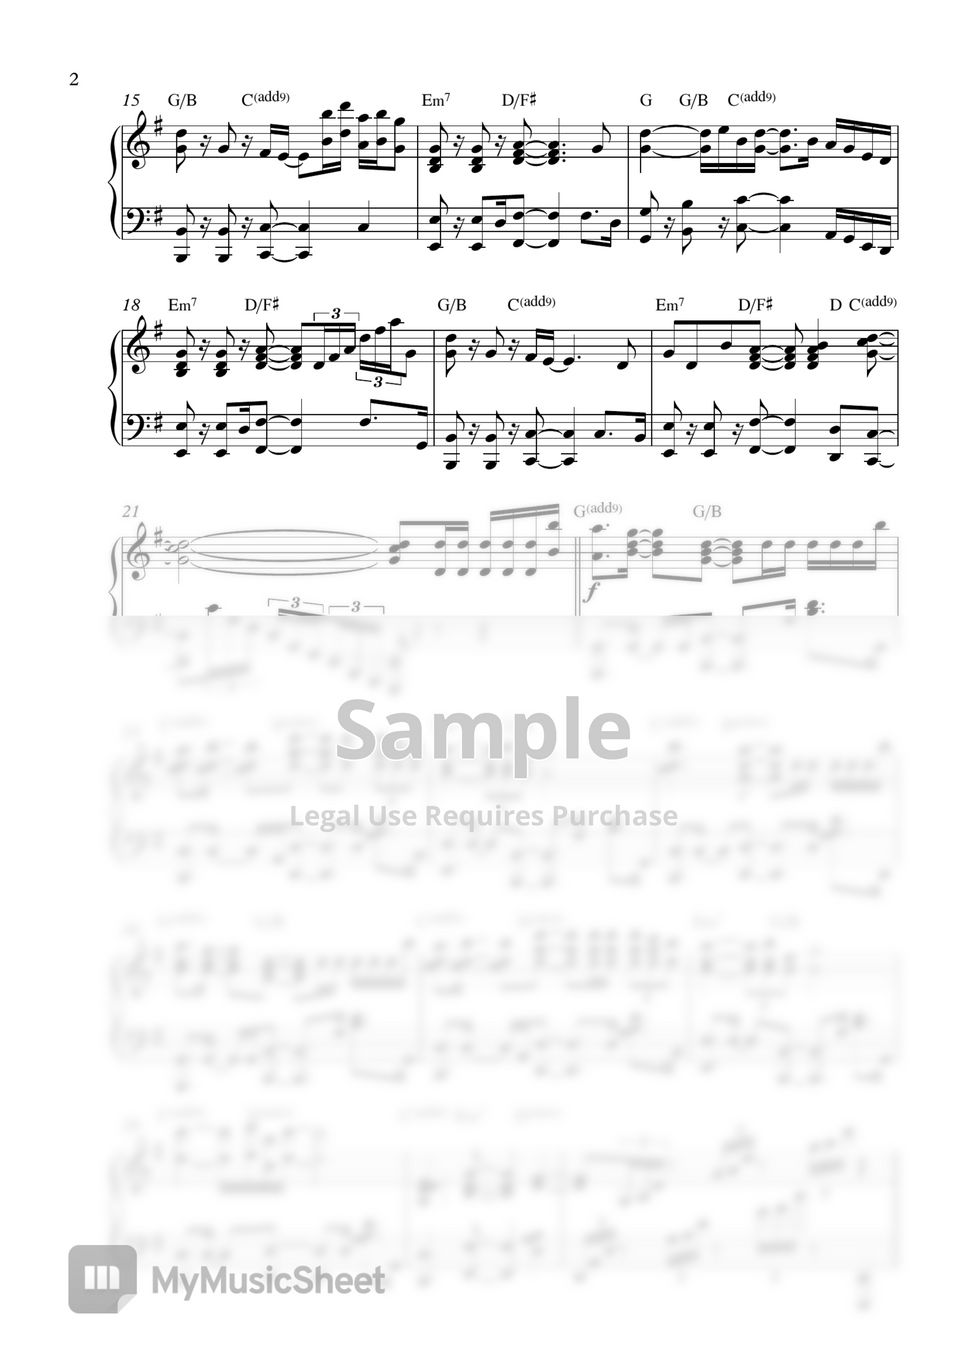 IU - strawberry moon ( 2 PDF: Original Key Gb & Easier Key G) by Pianella Piano